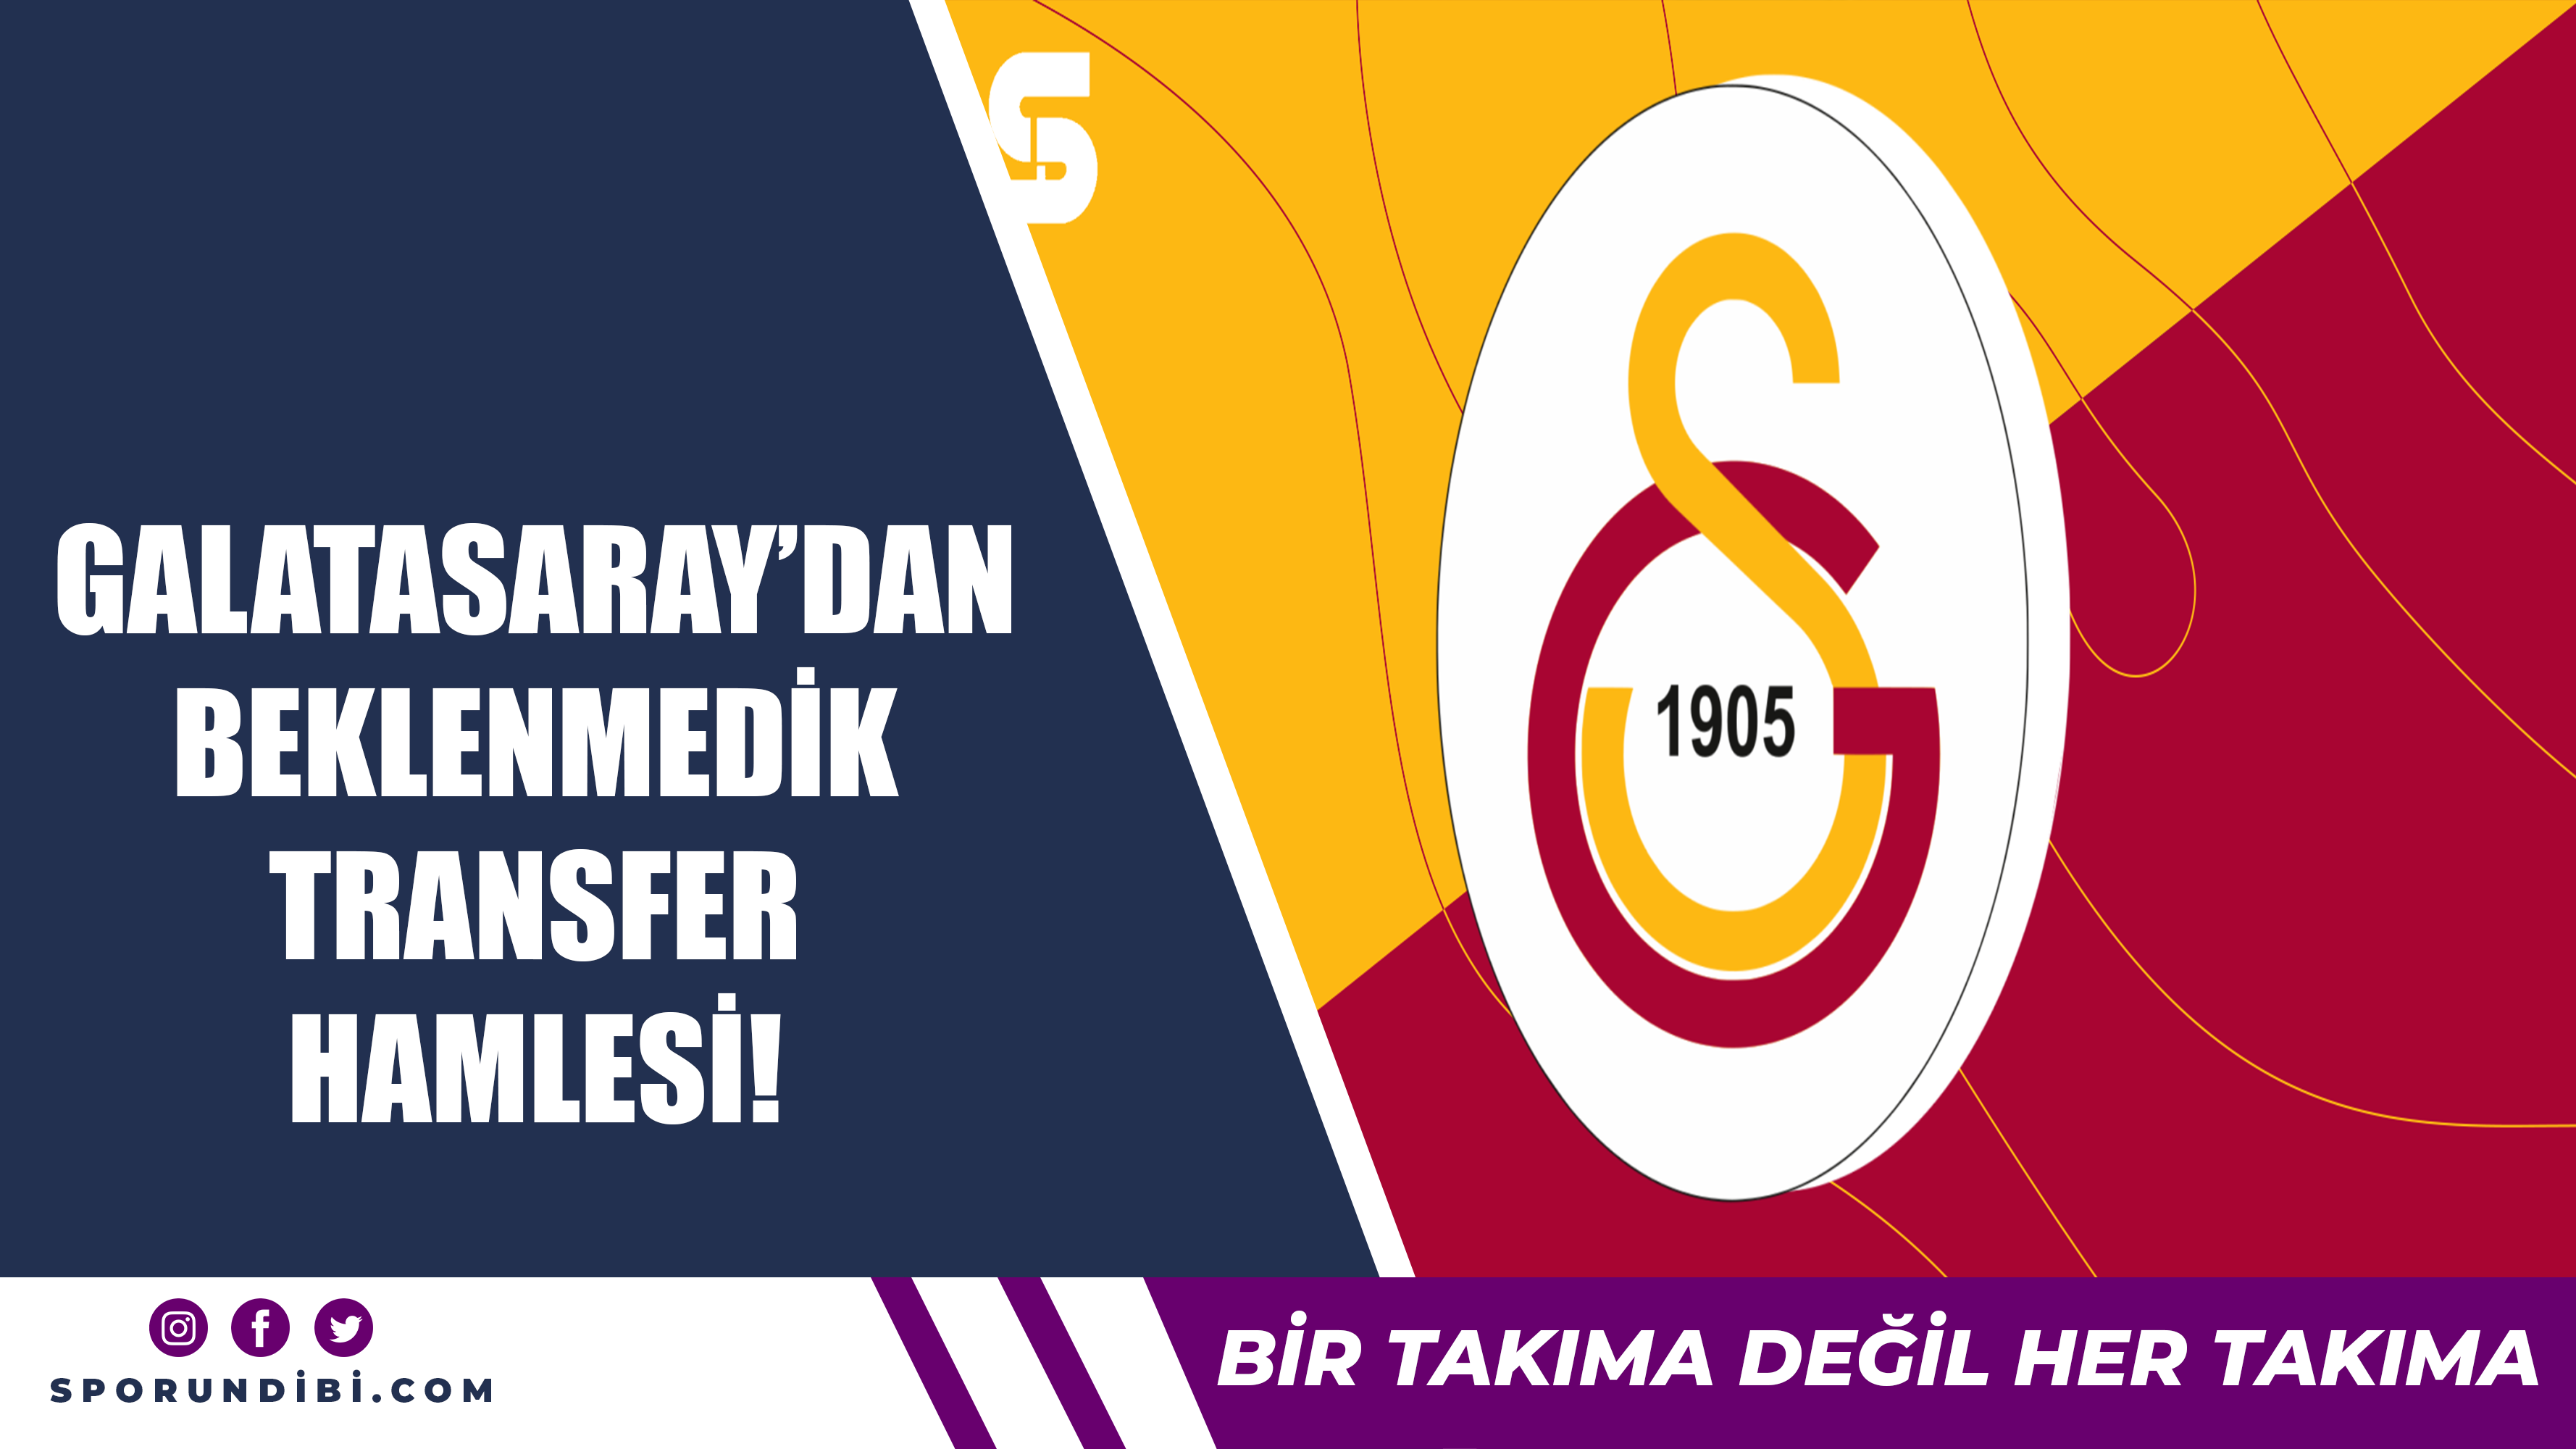 Galatasaray'dan beklenmedik transfer hamlesi!